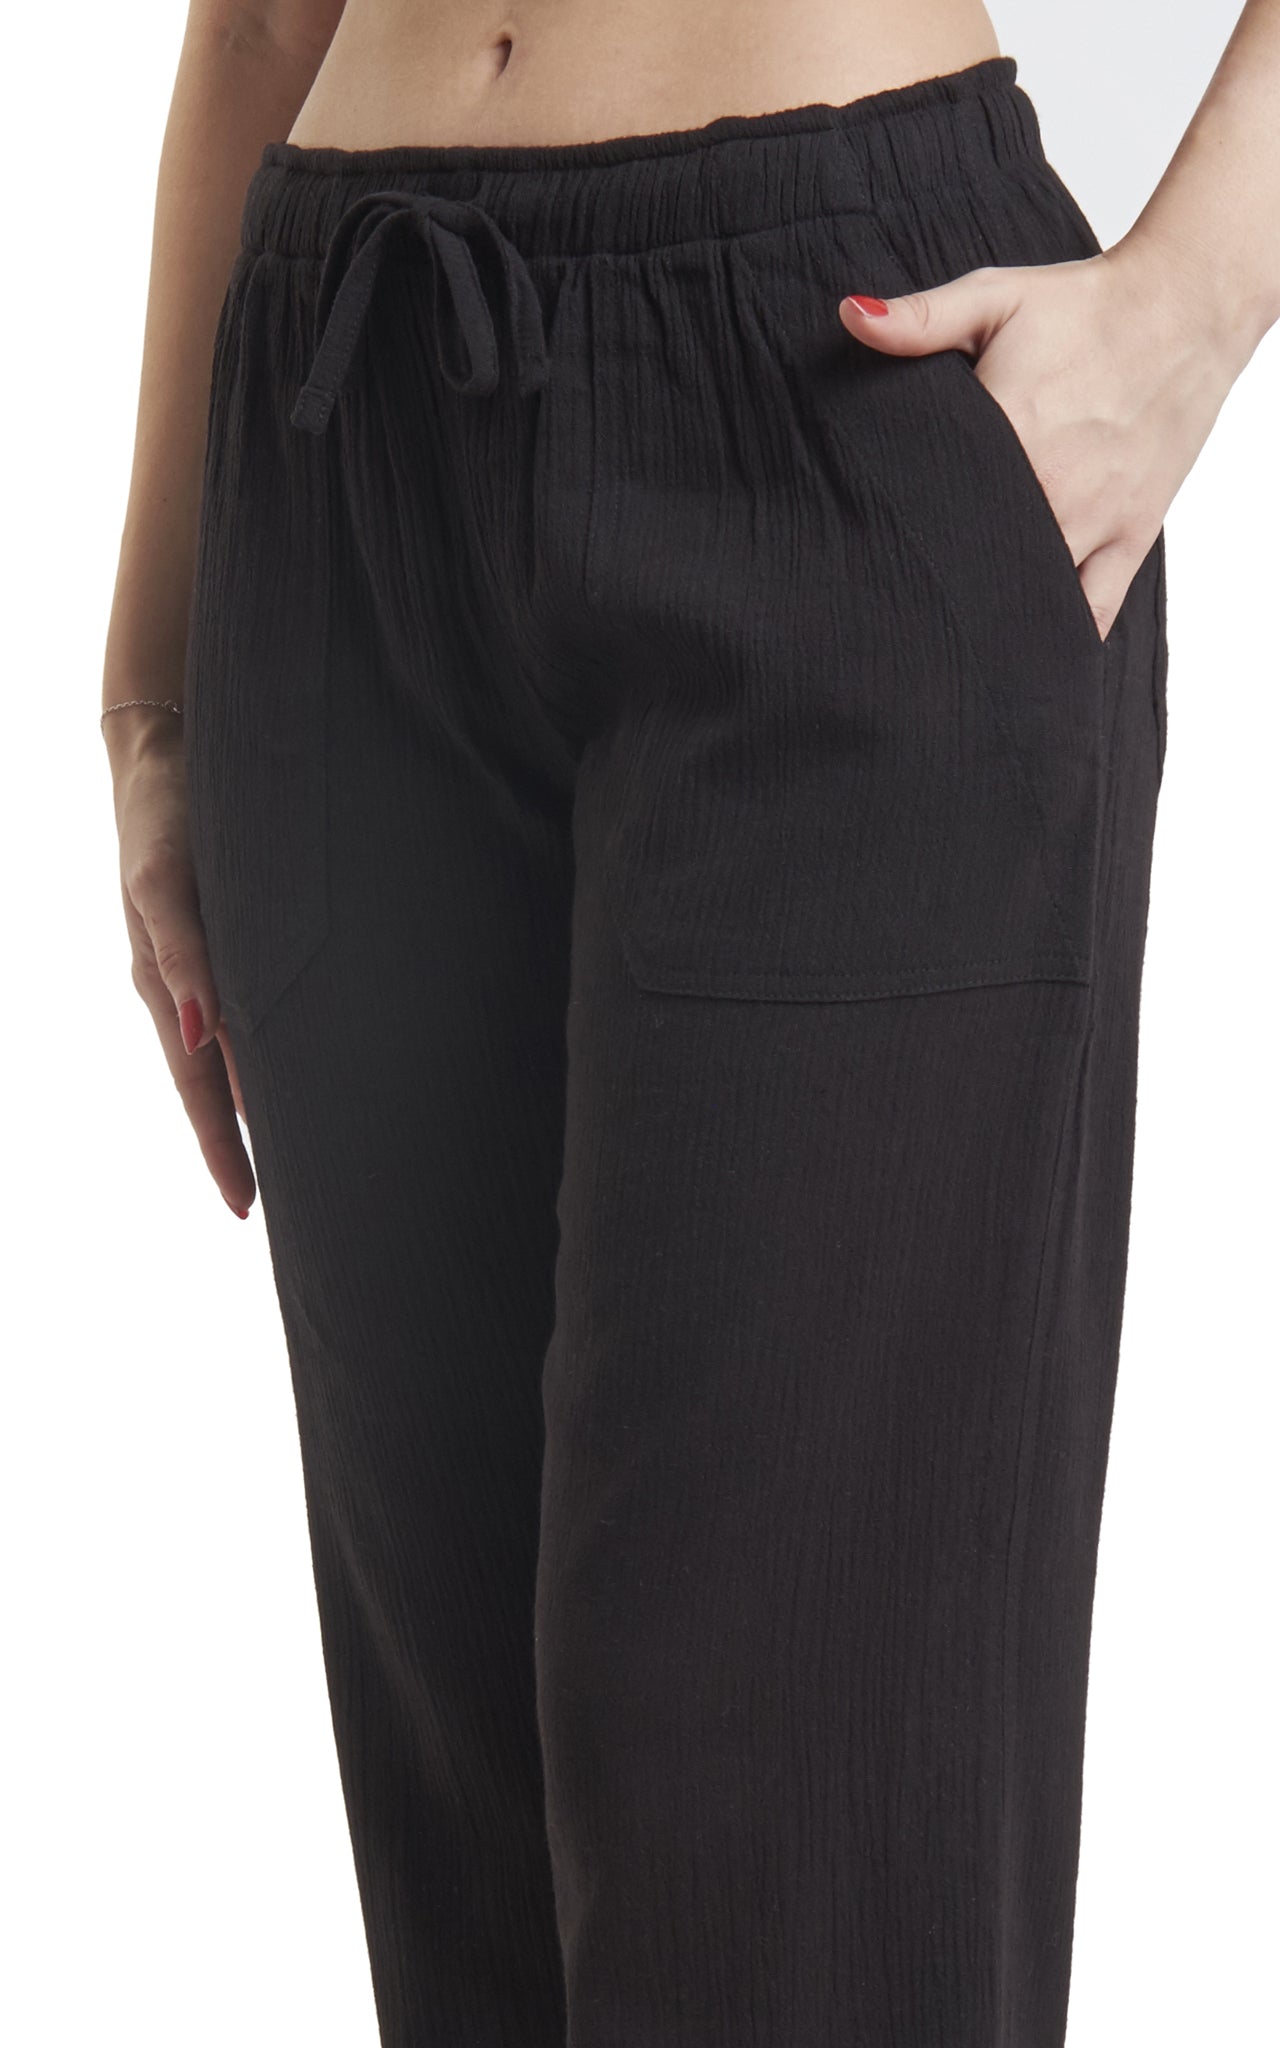 J & Ce Women's Cotton Gauze Capri Beach Pants with Pockets : :  Clothing, Shoes & Accessories